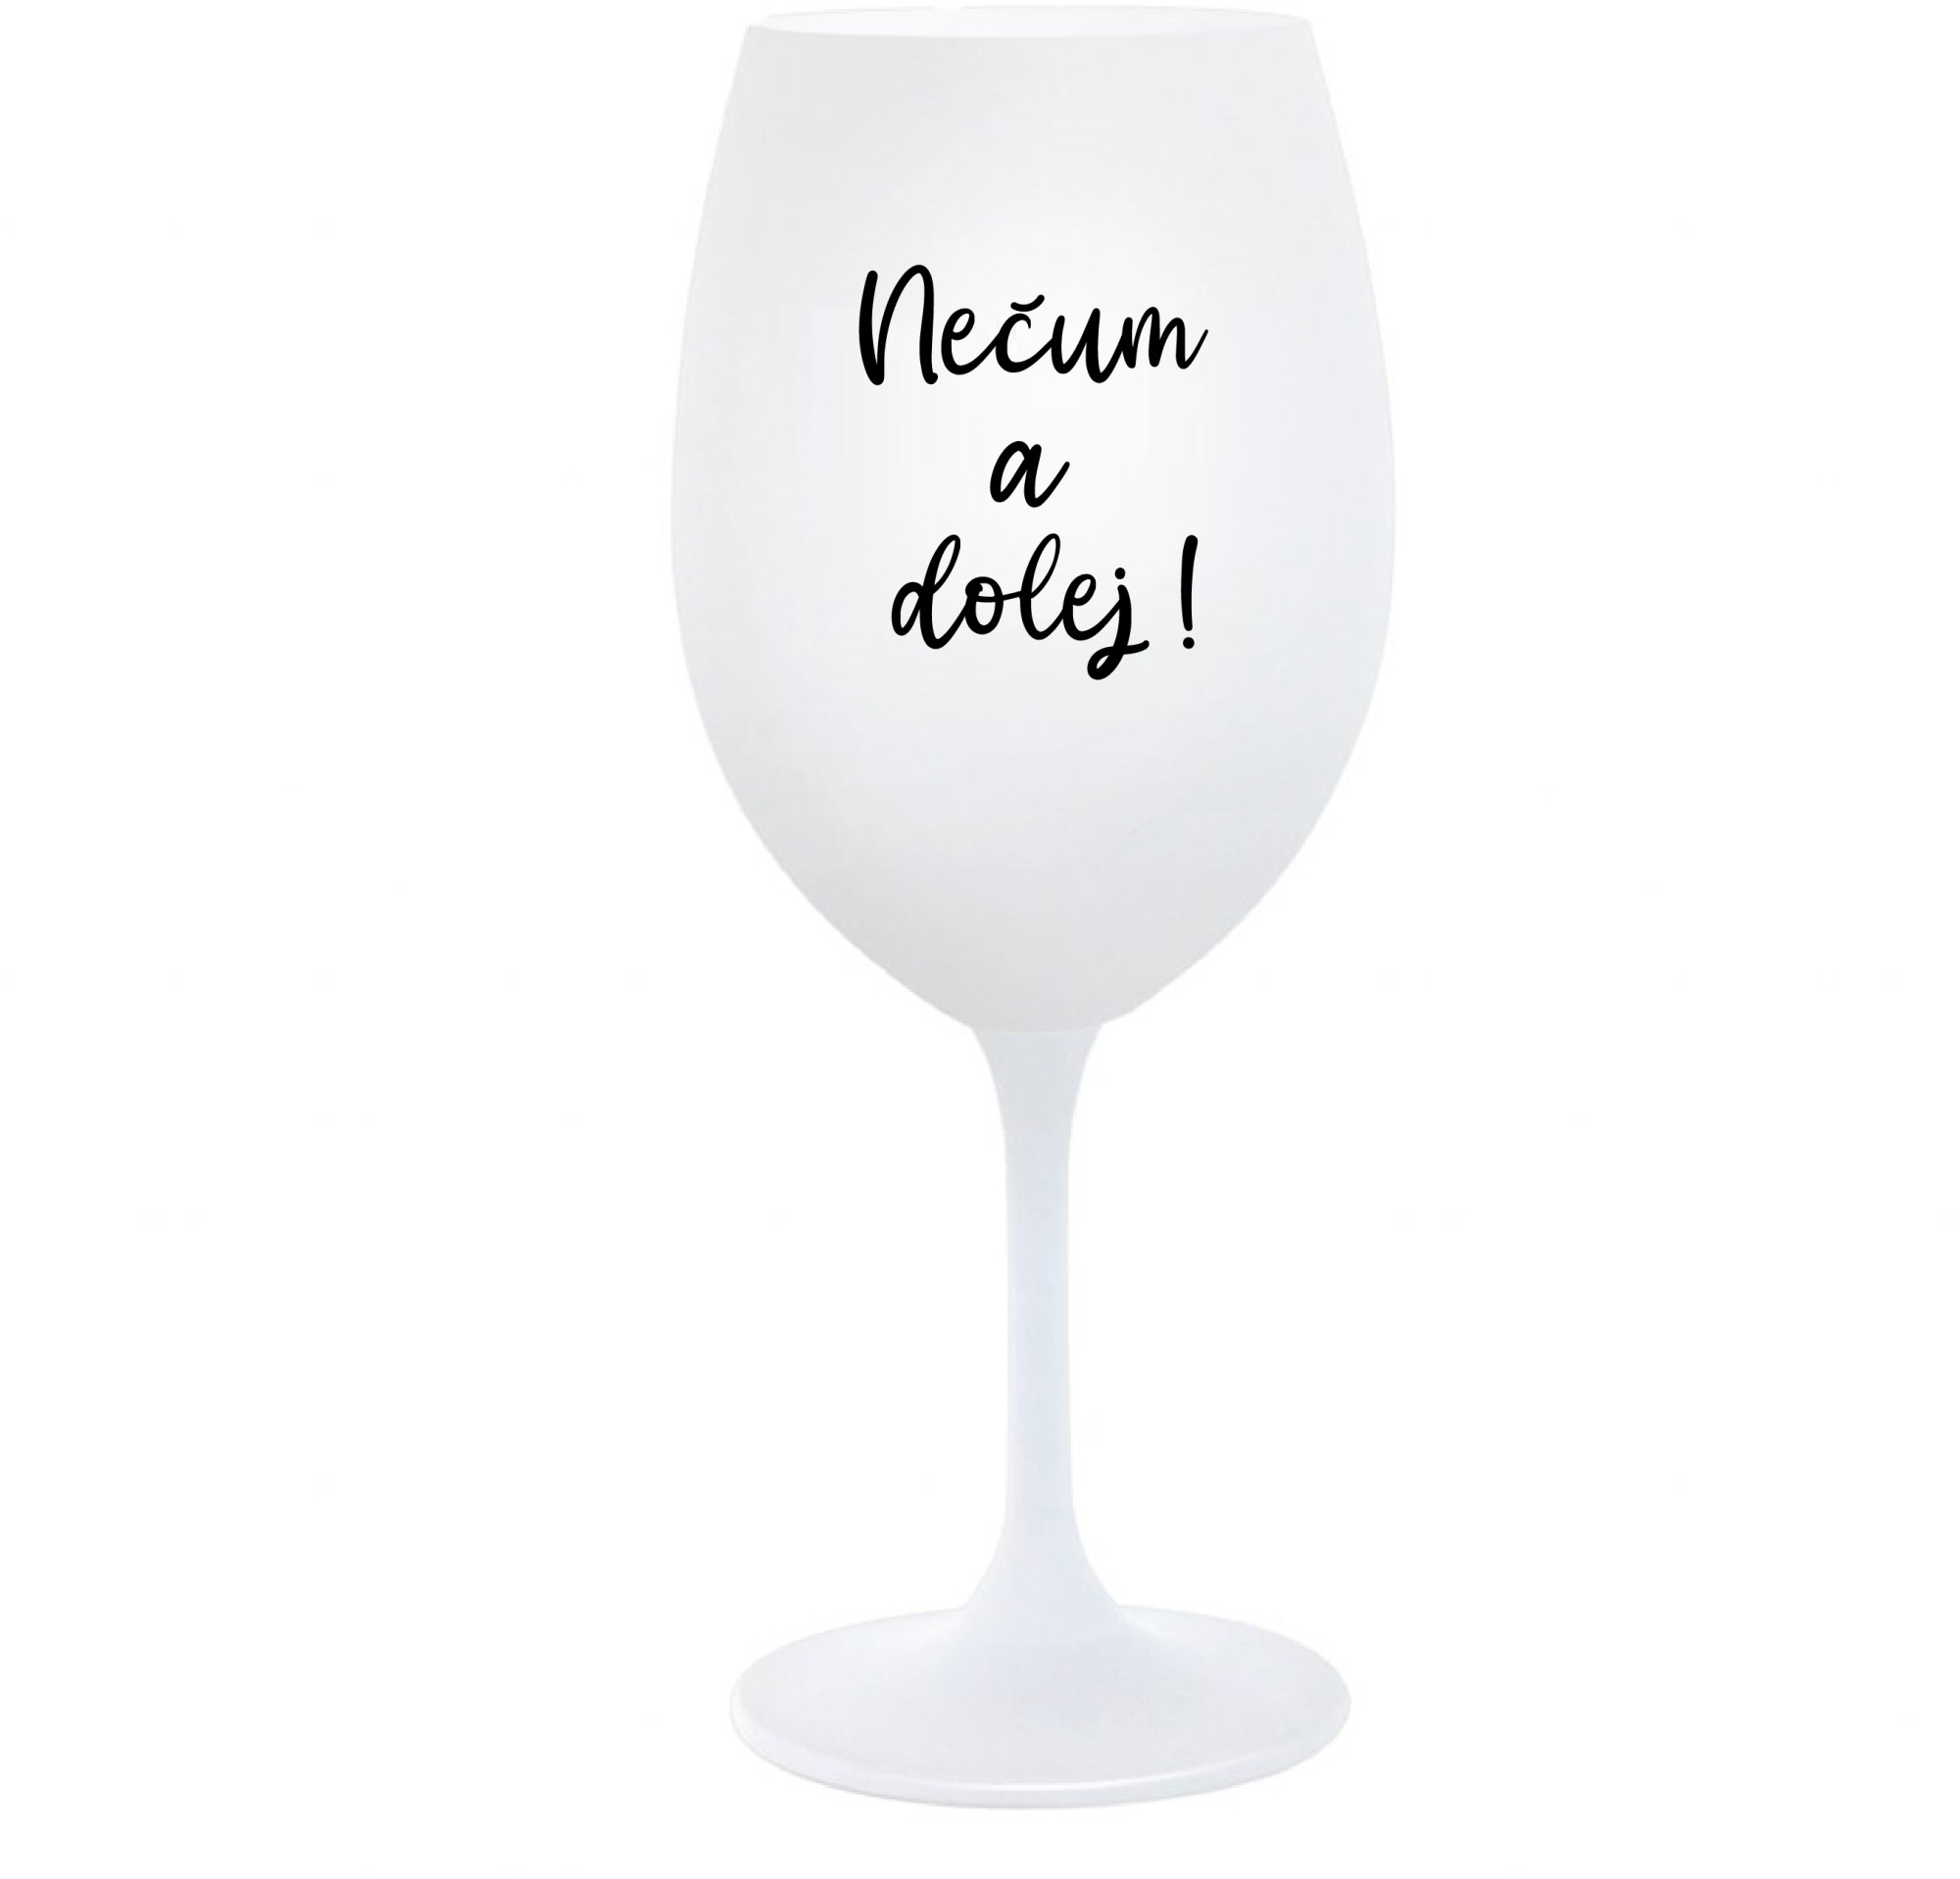 NEČUM A DOLEJ! - bílá sklenice na víno 350 ml